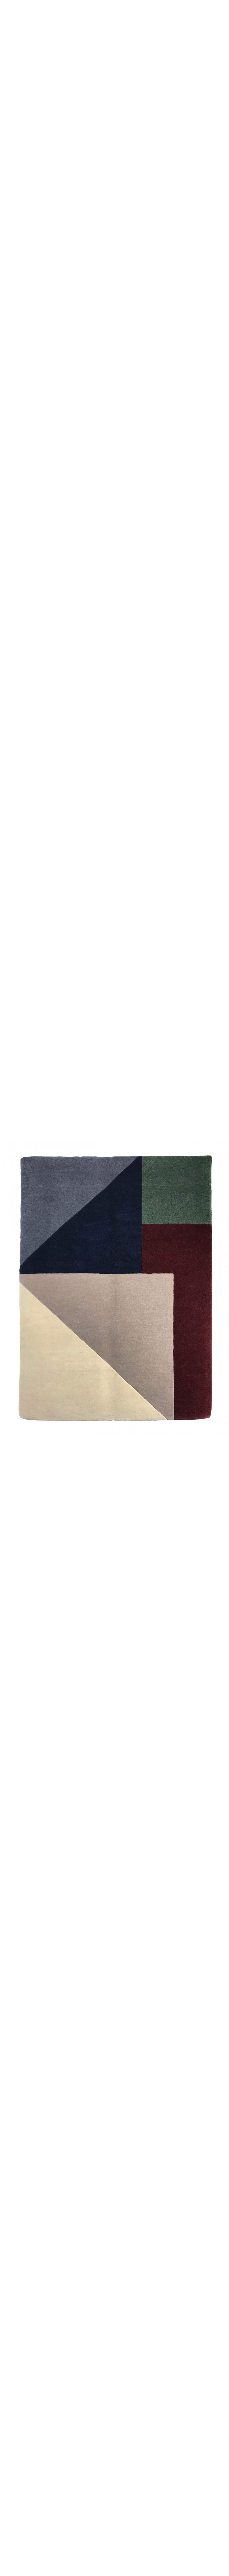 tappeti moderni geometrici astratti blu, rossi, verdi e bianchi